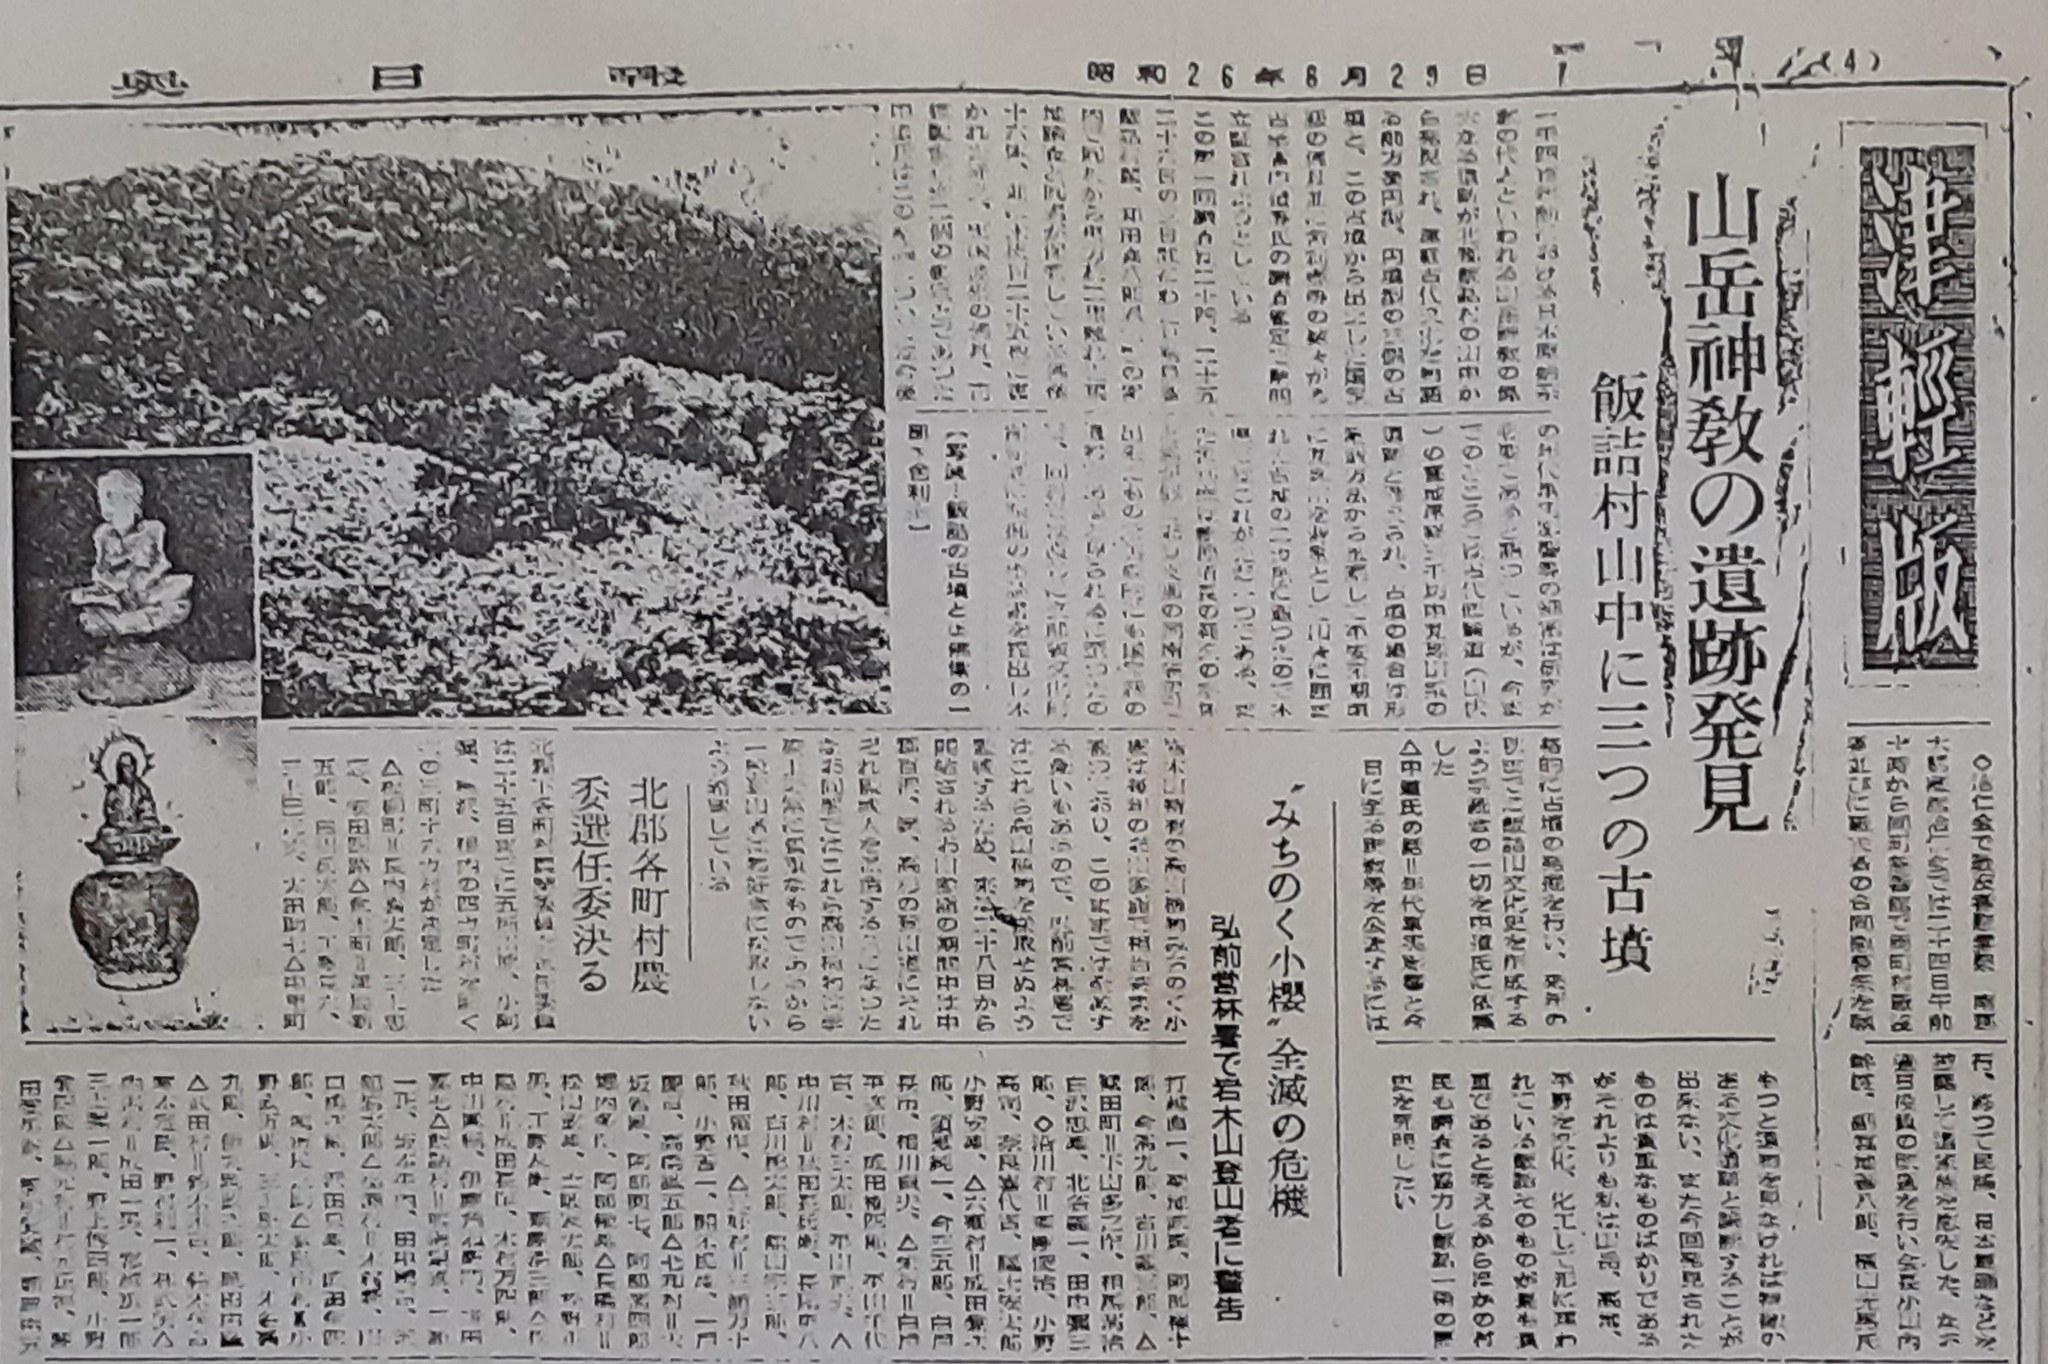 『東奥日報』昭和26年8月29日付記事を転載